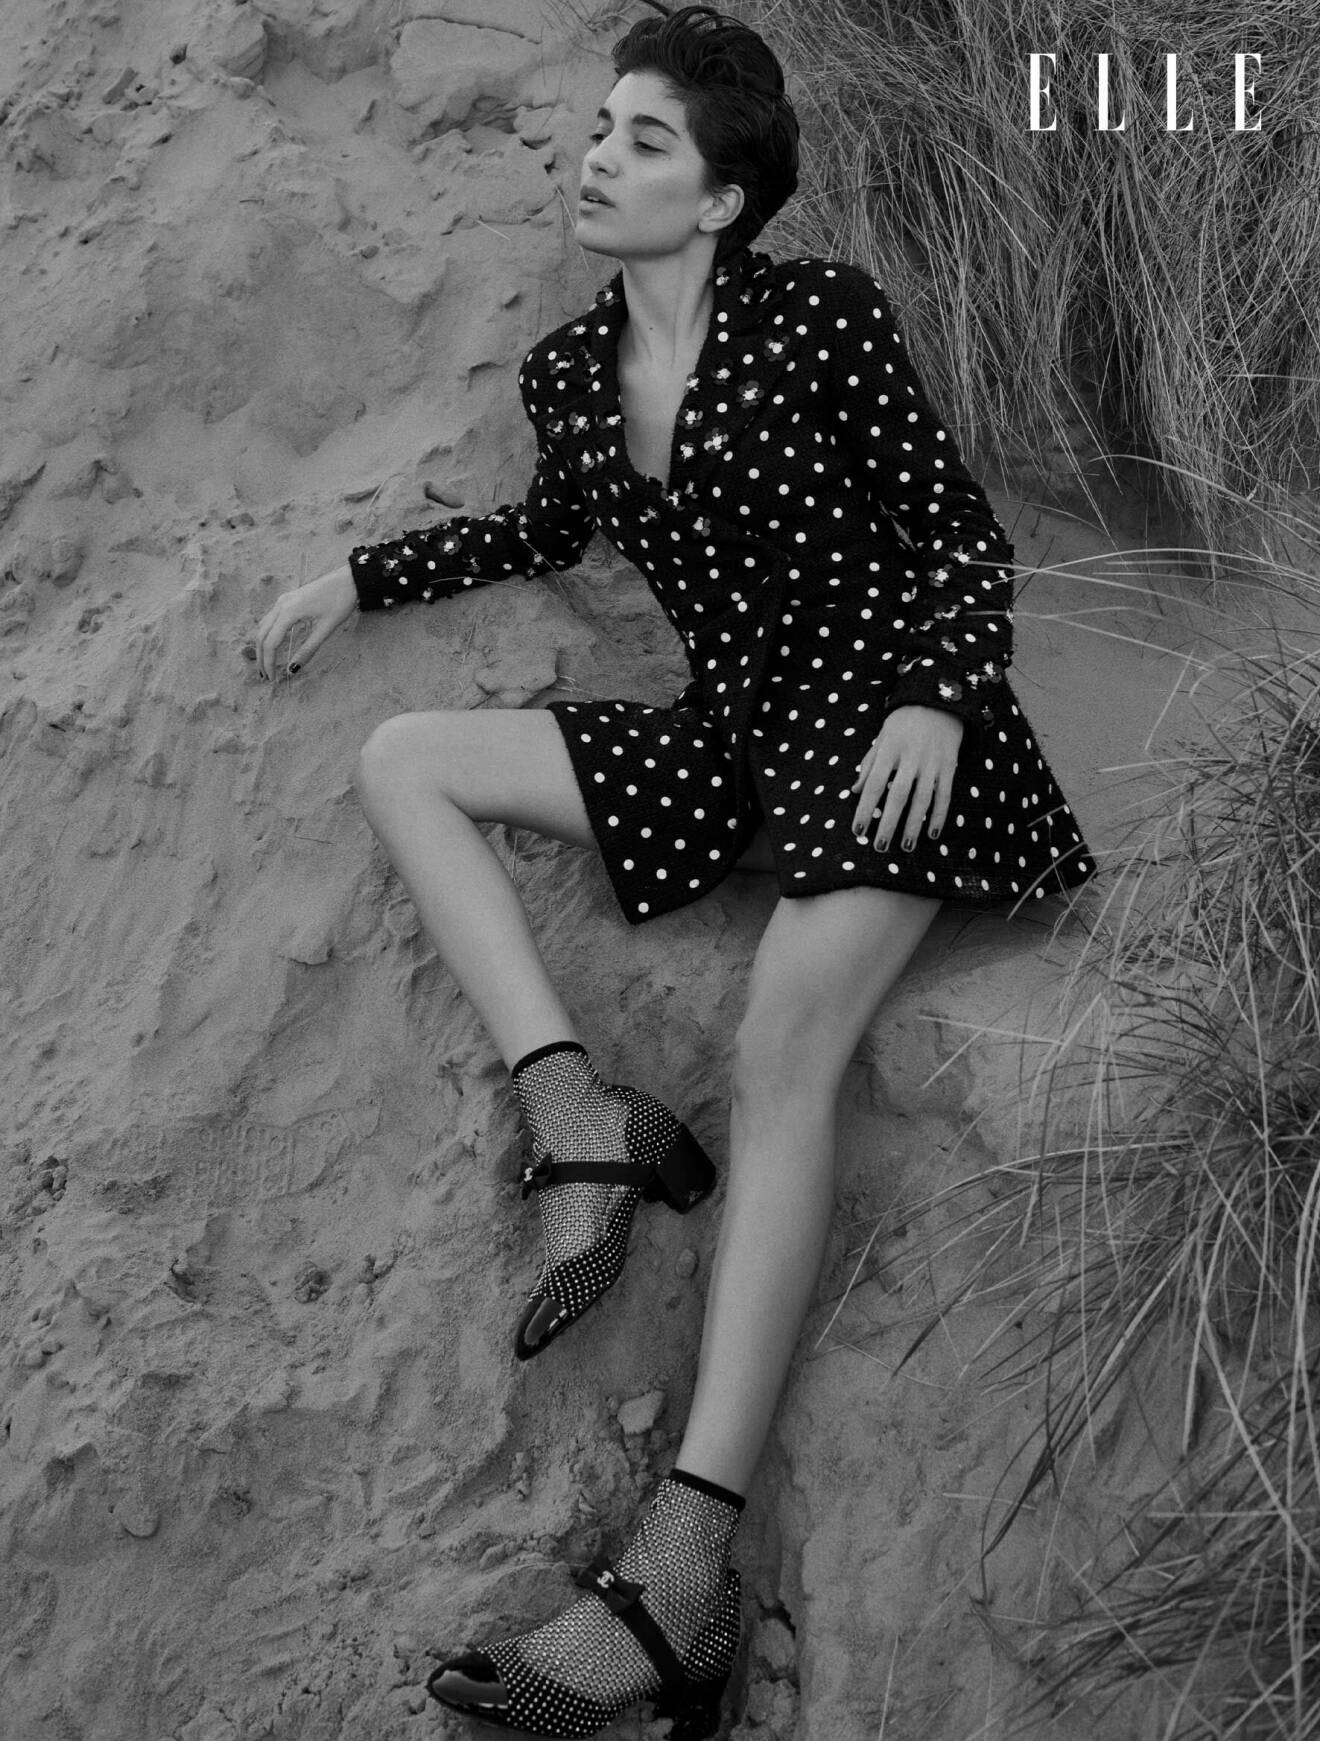 Modellen sitter i sanden, hon bär en svart kavajklänning med vita prickar från CHanel.